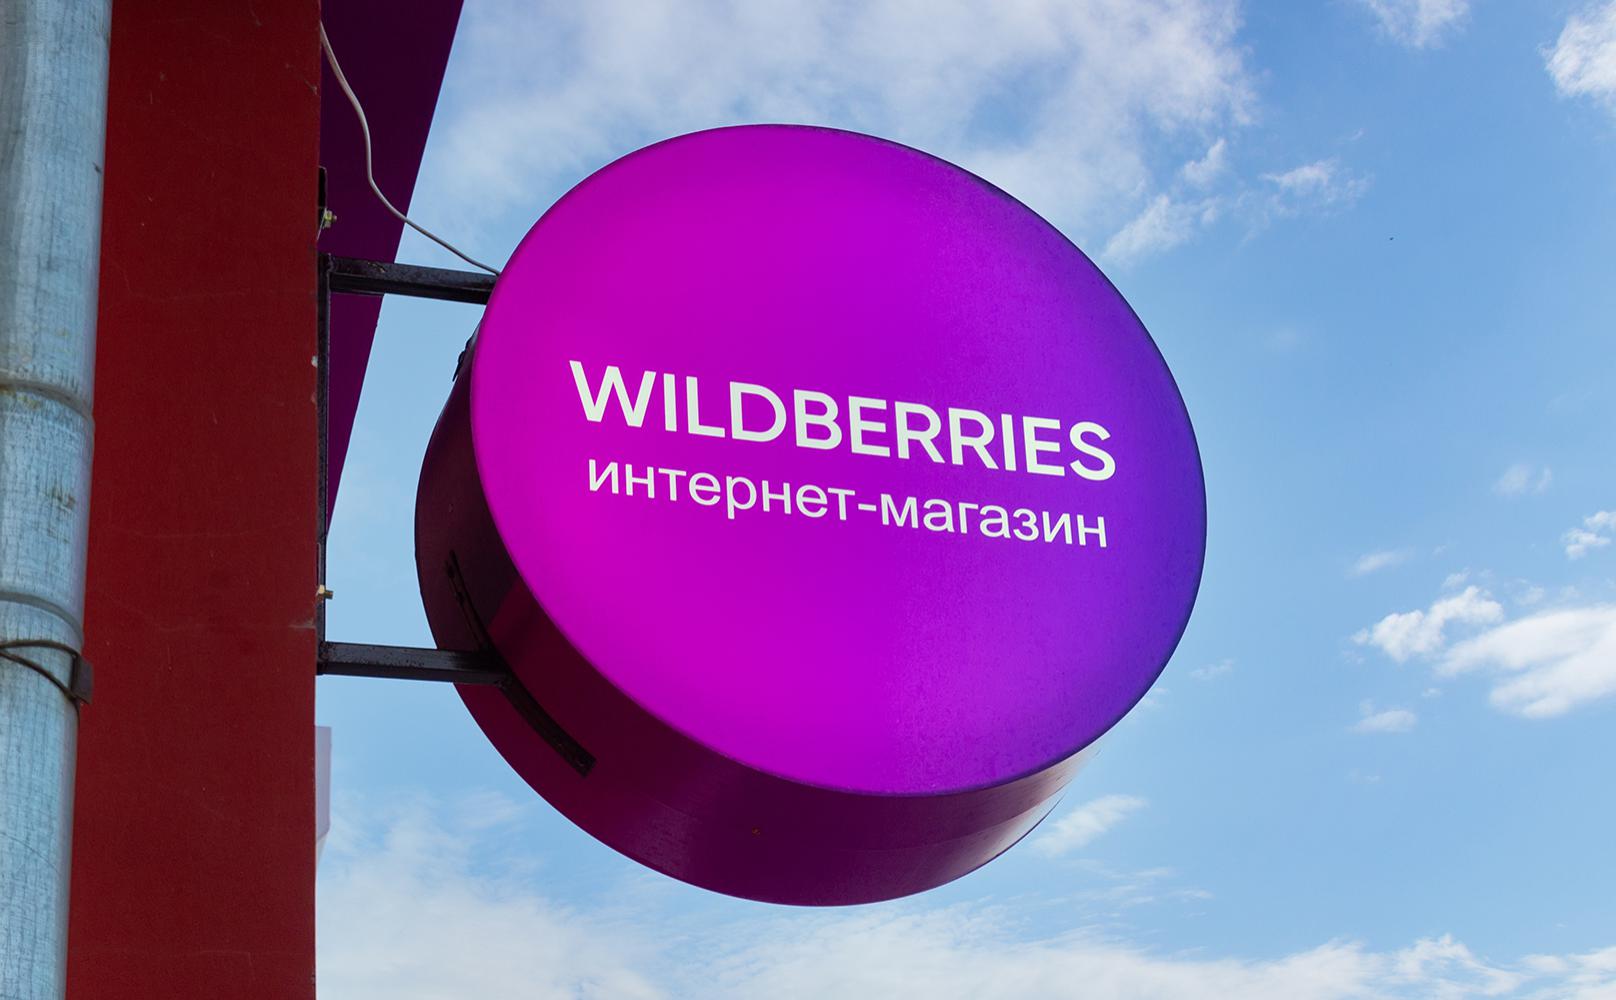 Wildberries-ը կսկսի փոխհատուցում վճարել Էլեկտրոստալի պահեստում վնասված ապրանքների համար․ հայտարարություն